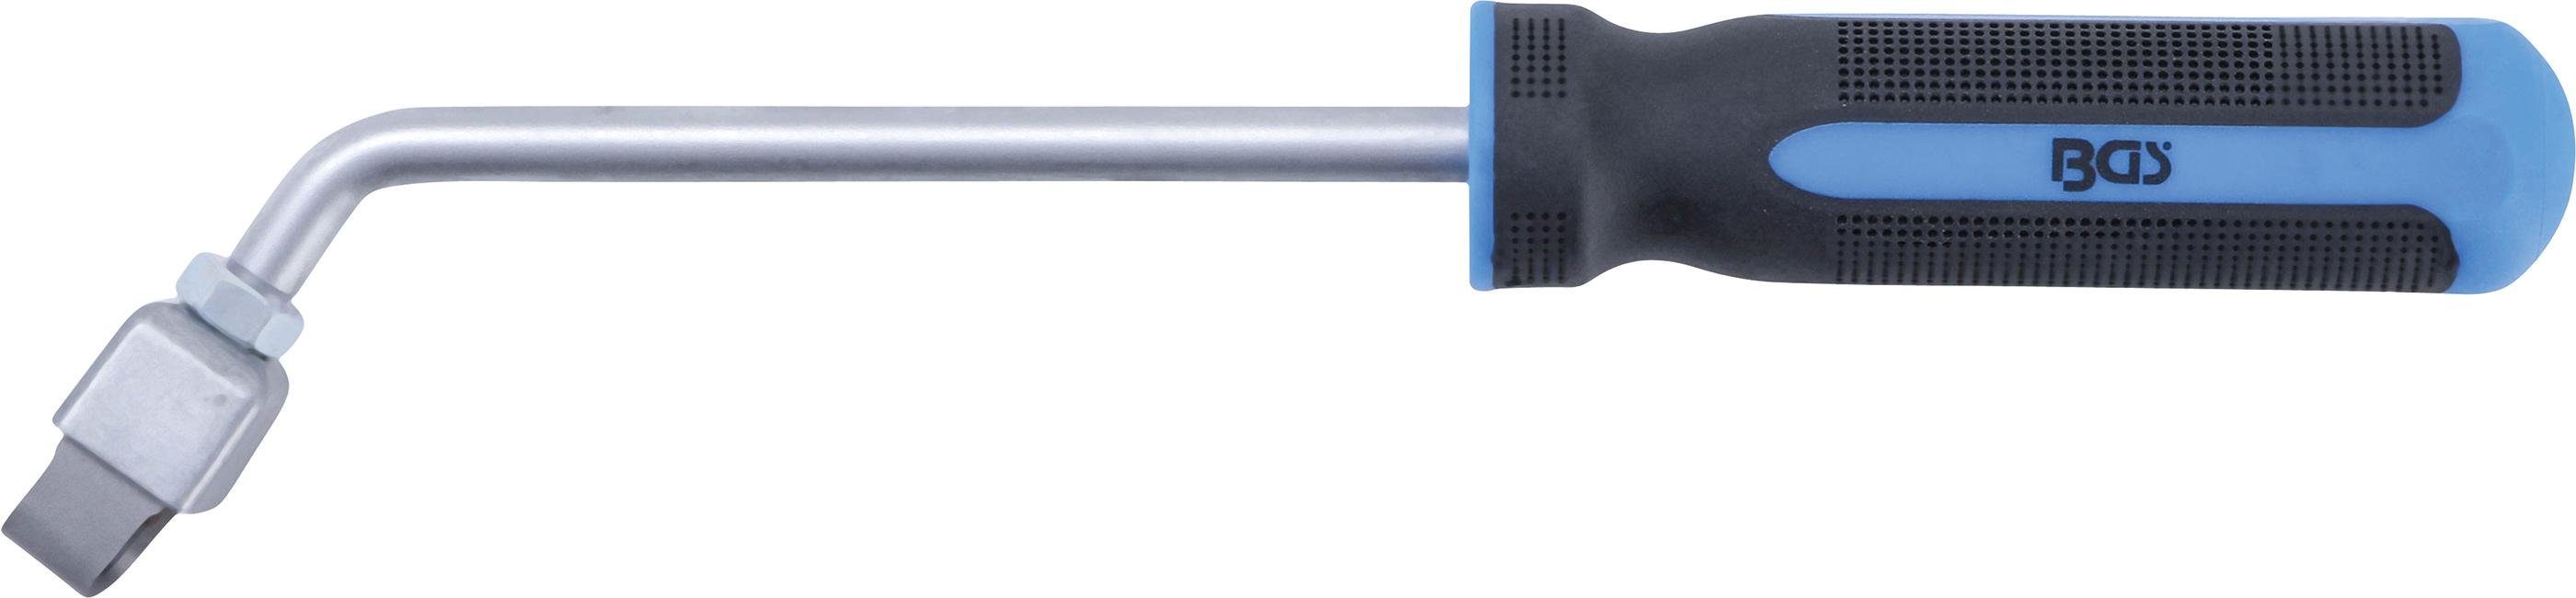 BGS technic Universalschaber Dichtungsschaber, abgewinkelt, mm 155